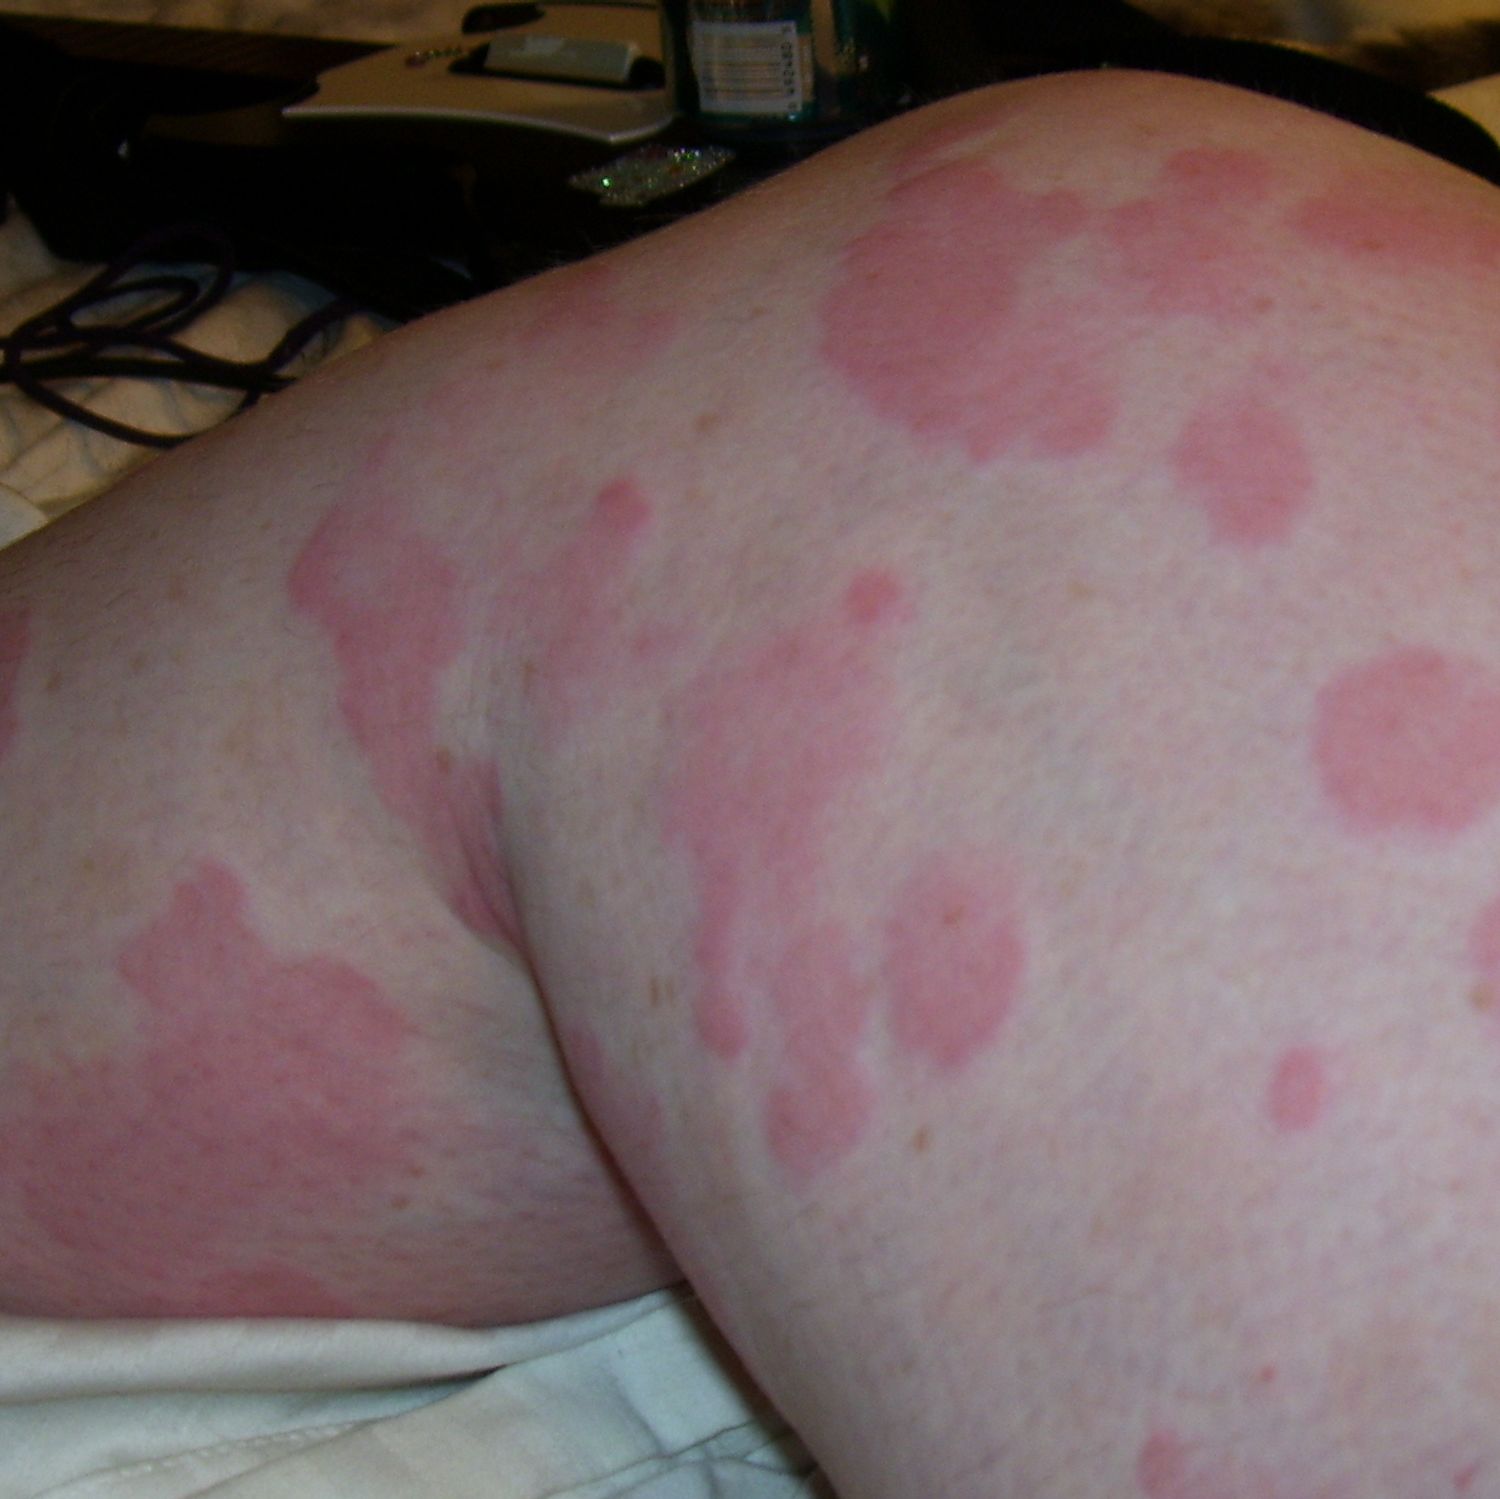 bacterial rash